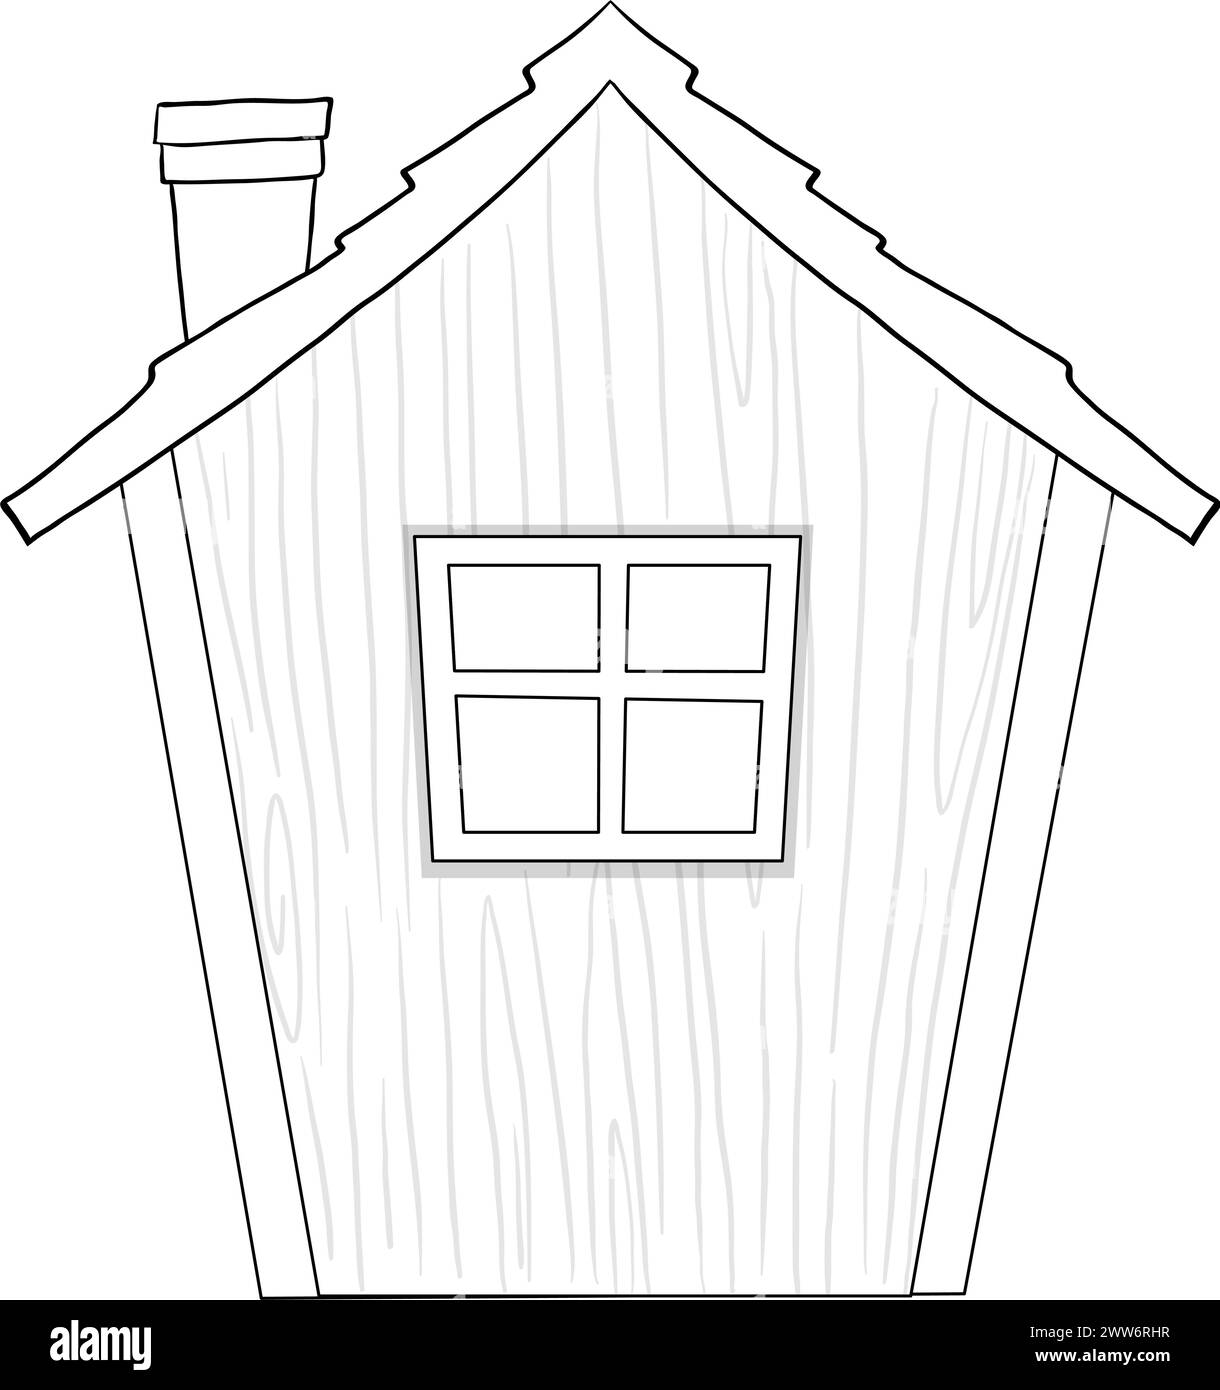 Semplice disegno in linea di una casa di legno. Illustrazione Vettoriale